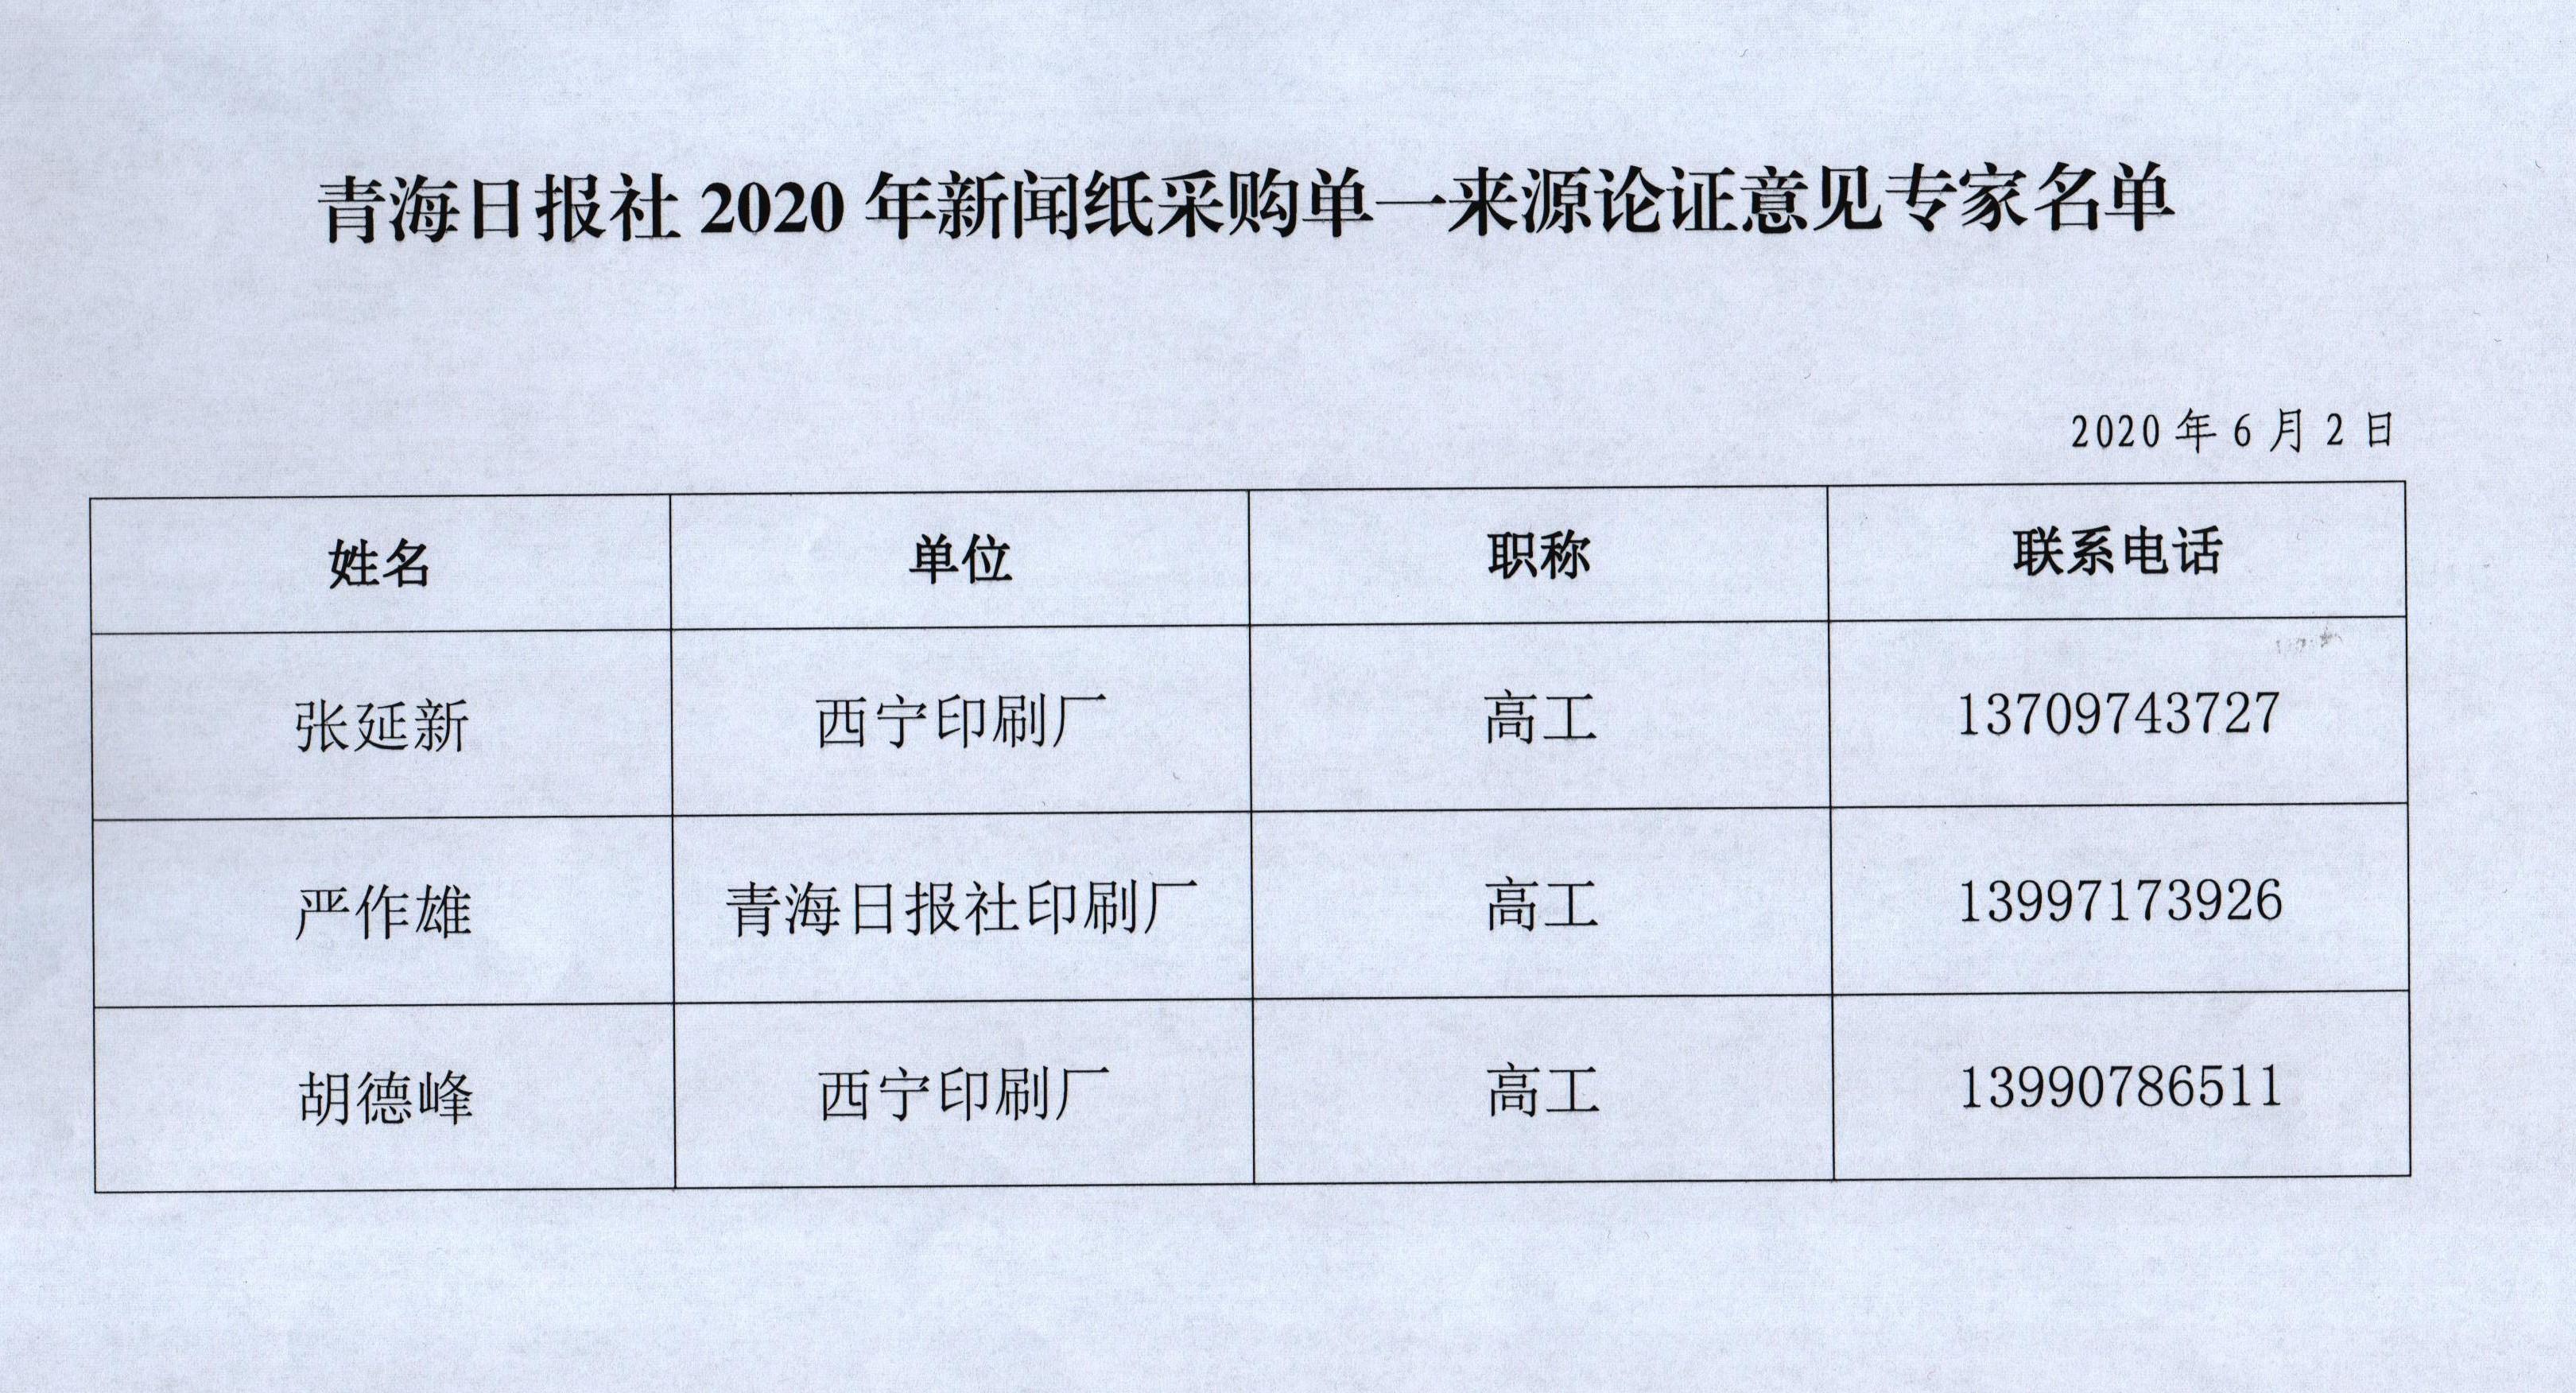 青海日报社关于青海日报社2020年新闻纸采购的单一来源采购项目征求意见公示